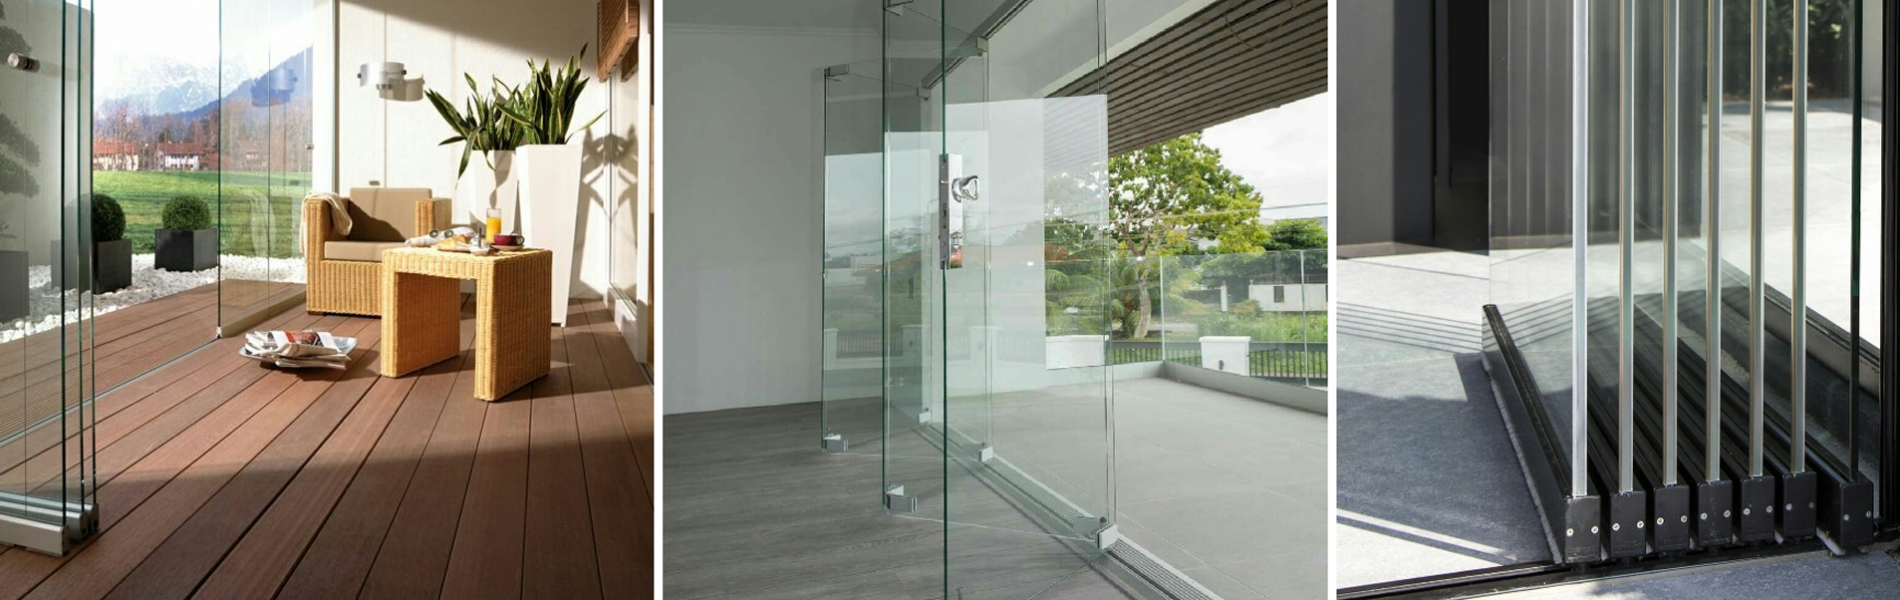 systemy składane do drzwi szklanychKażdy panel szklany drzwi harmonijkowych łączy się z innymi i składa się podczas otwierania - wszystko w ramach jednego toru. Składane szklane ściany oferują szerokie, niezakłócone przejścia które nie są ograniczane jak przy systemach przesuwnych.